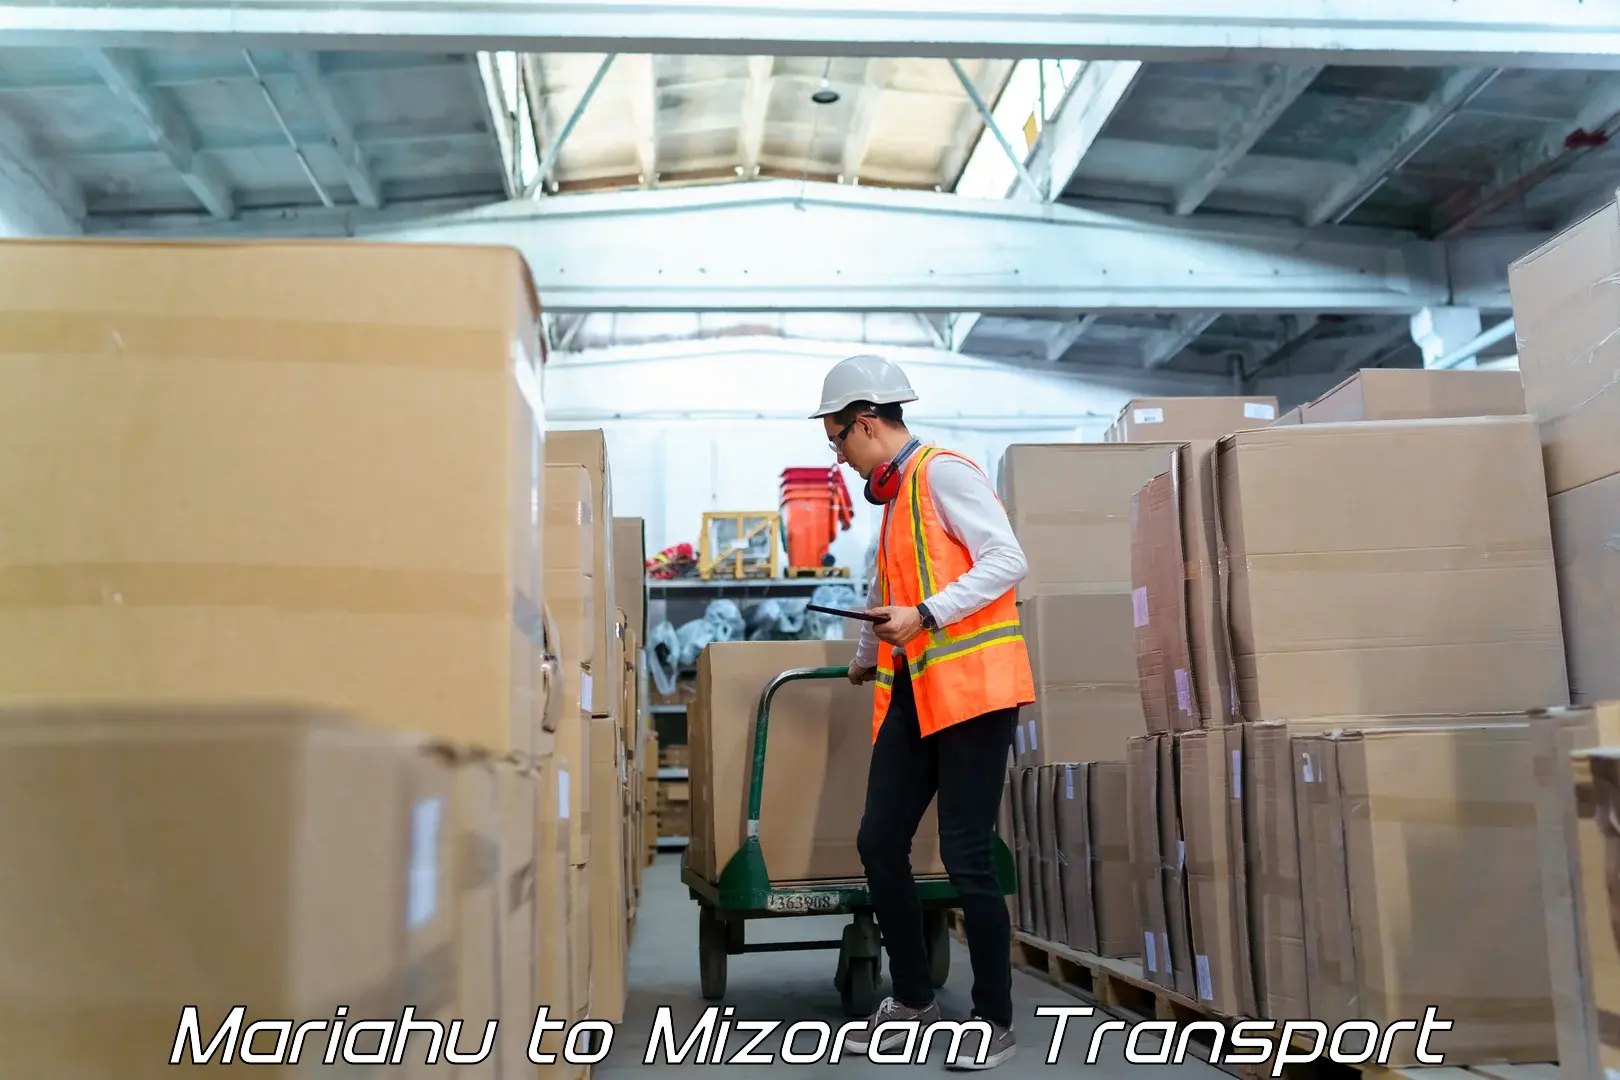 Lorry transport service Mariahu to Mizoram